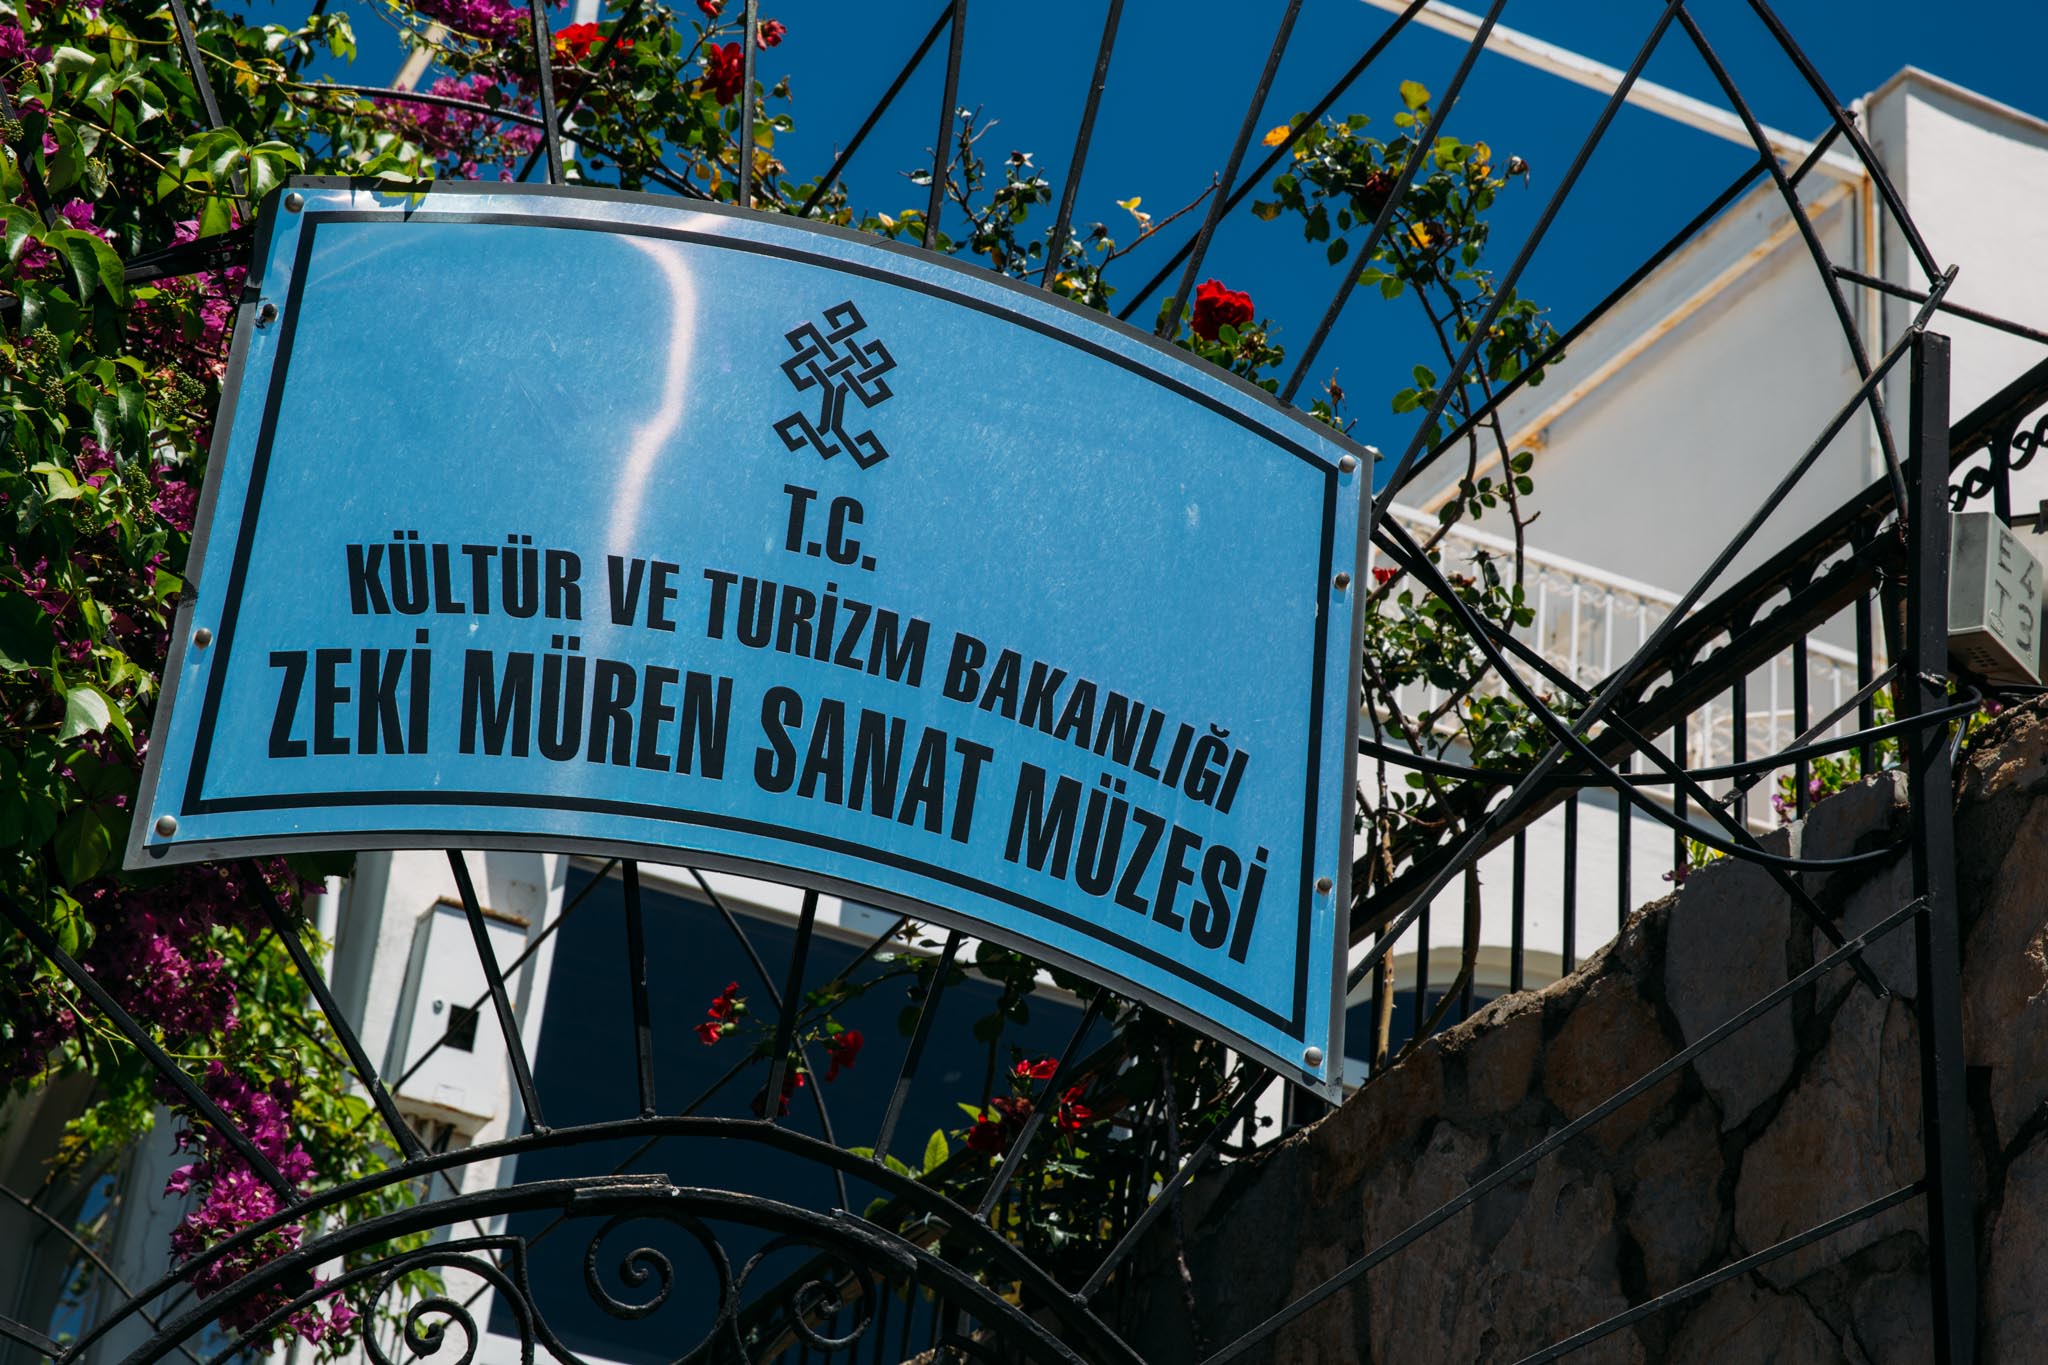 Zeki Muren Art Museum